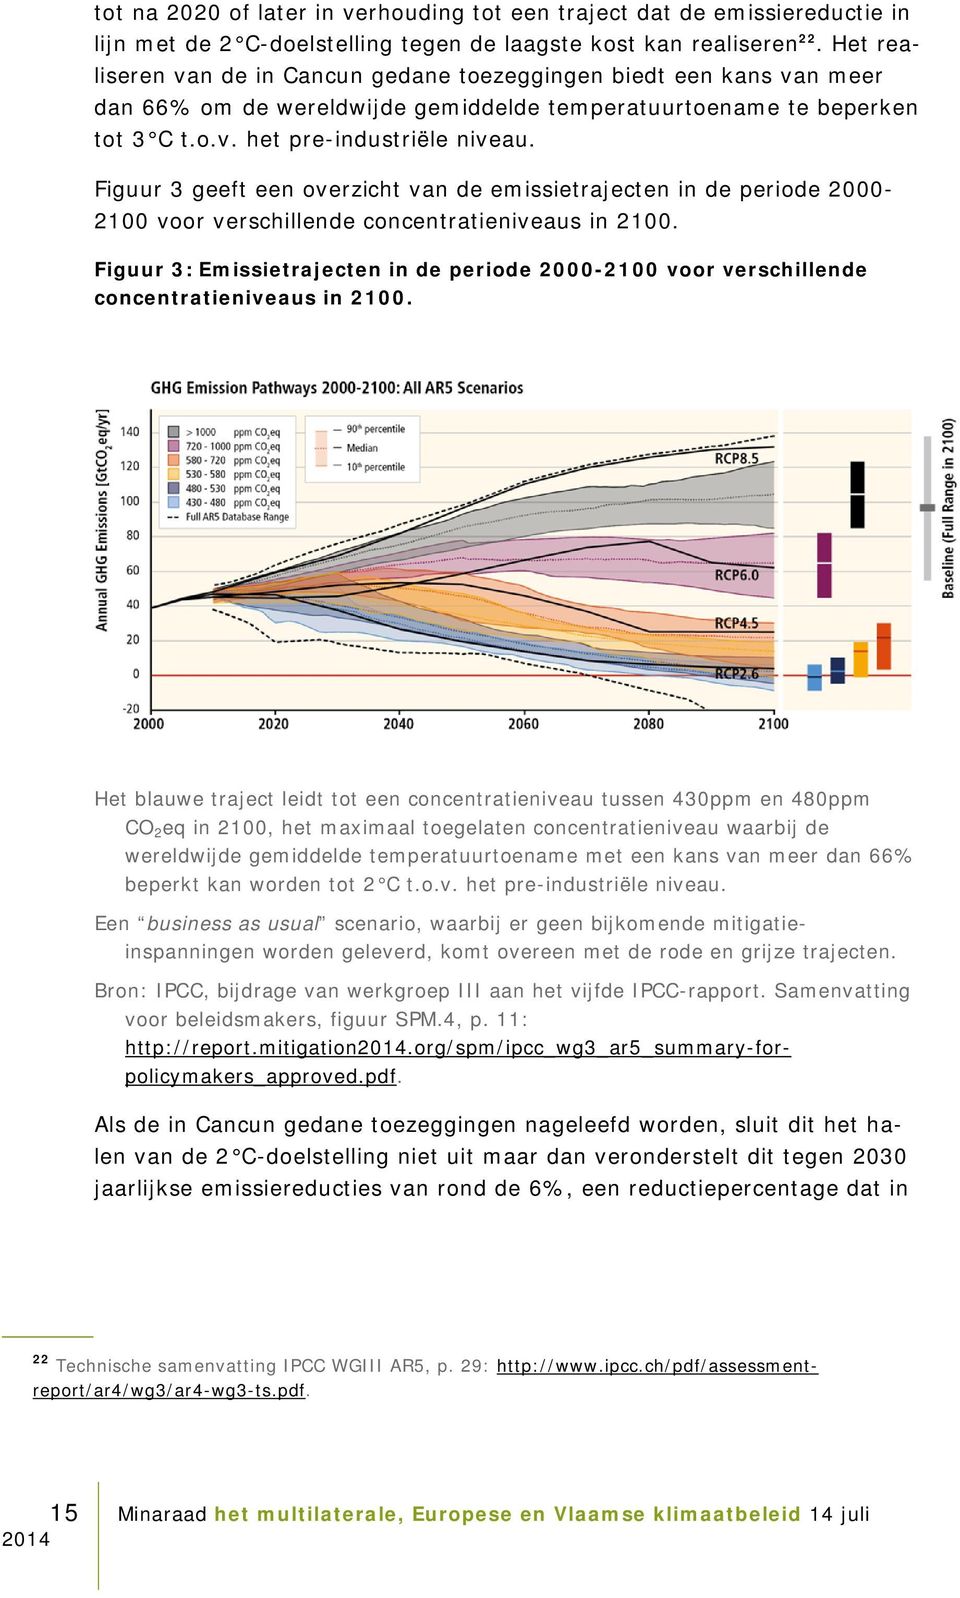 Figuur 3 geeft een overzicht van de emissietrajecten in de periode 2000-2100 voor verschillende concentratieniveaus in 2100.